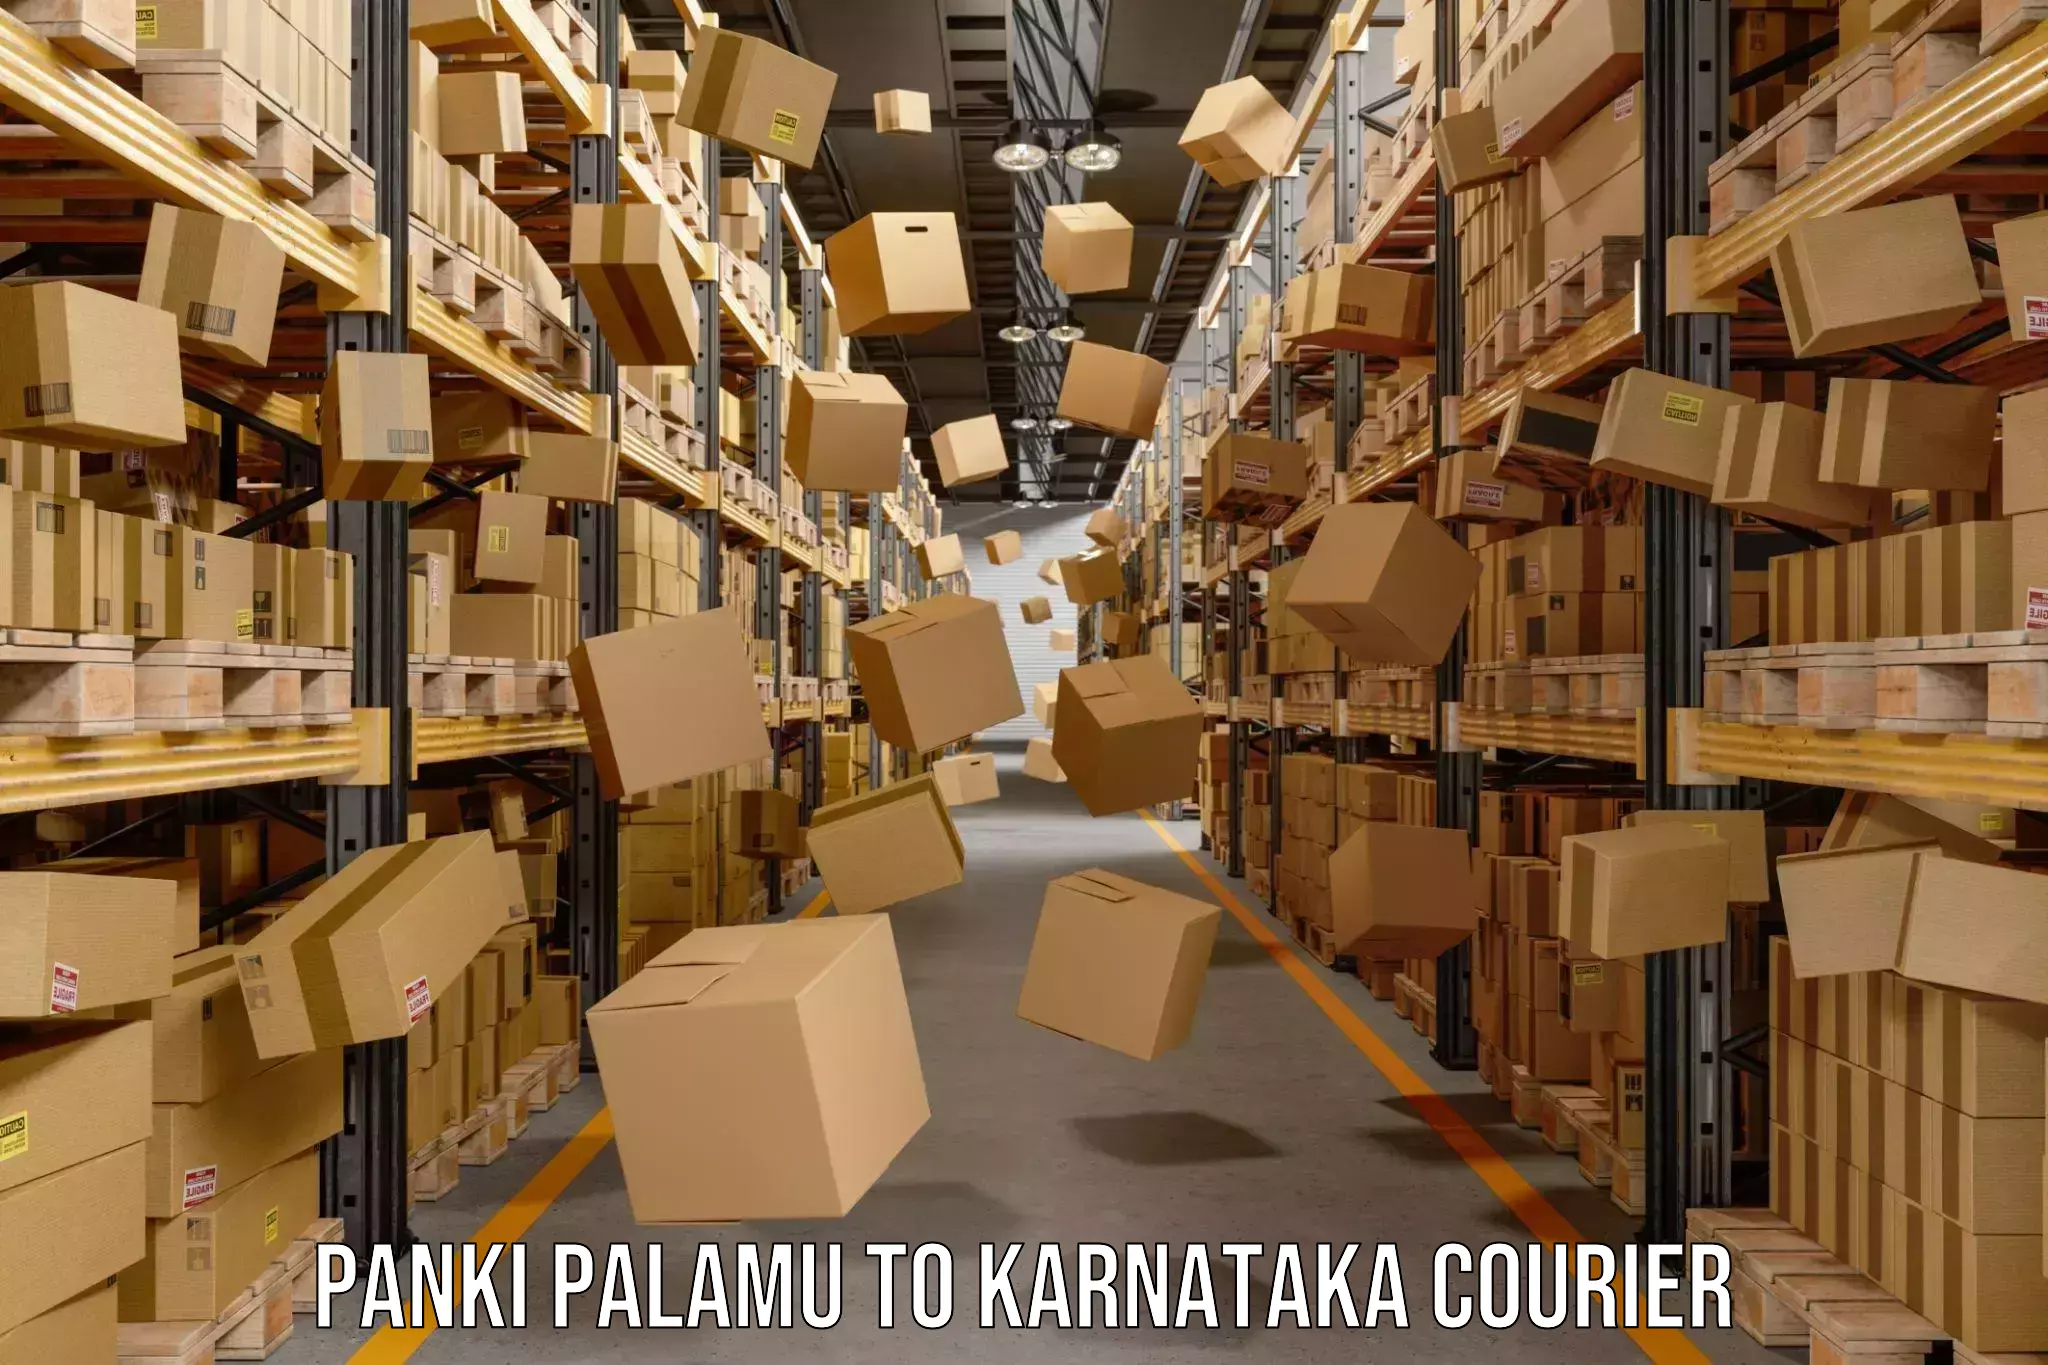 Modern courier technology Panki Palamu to Karnataka